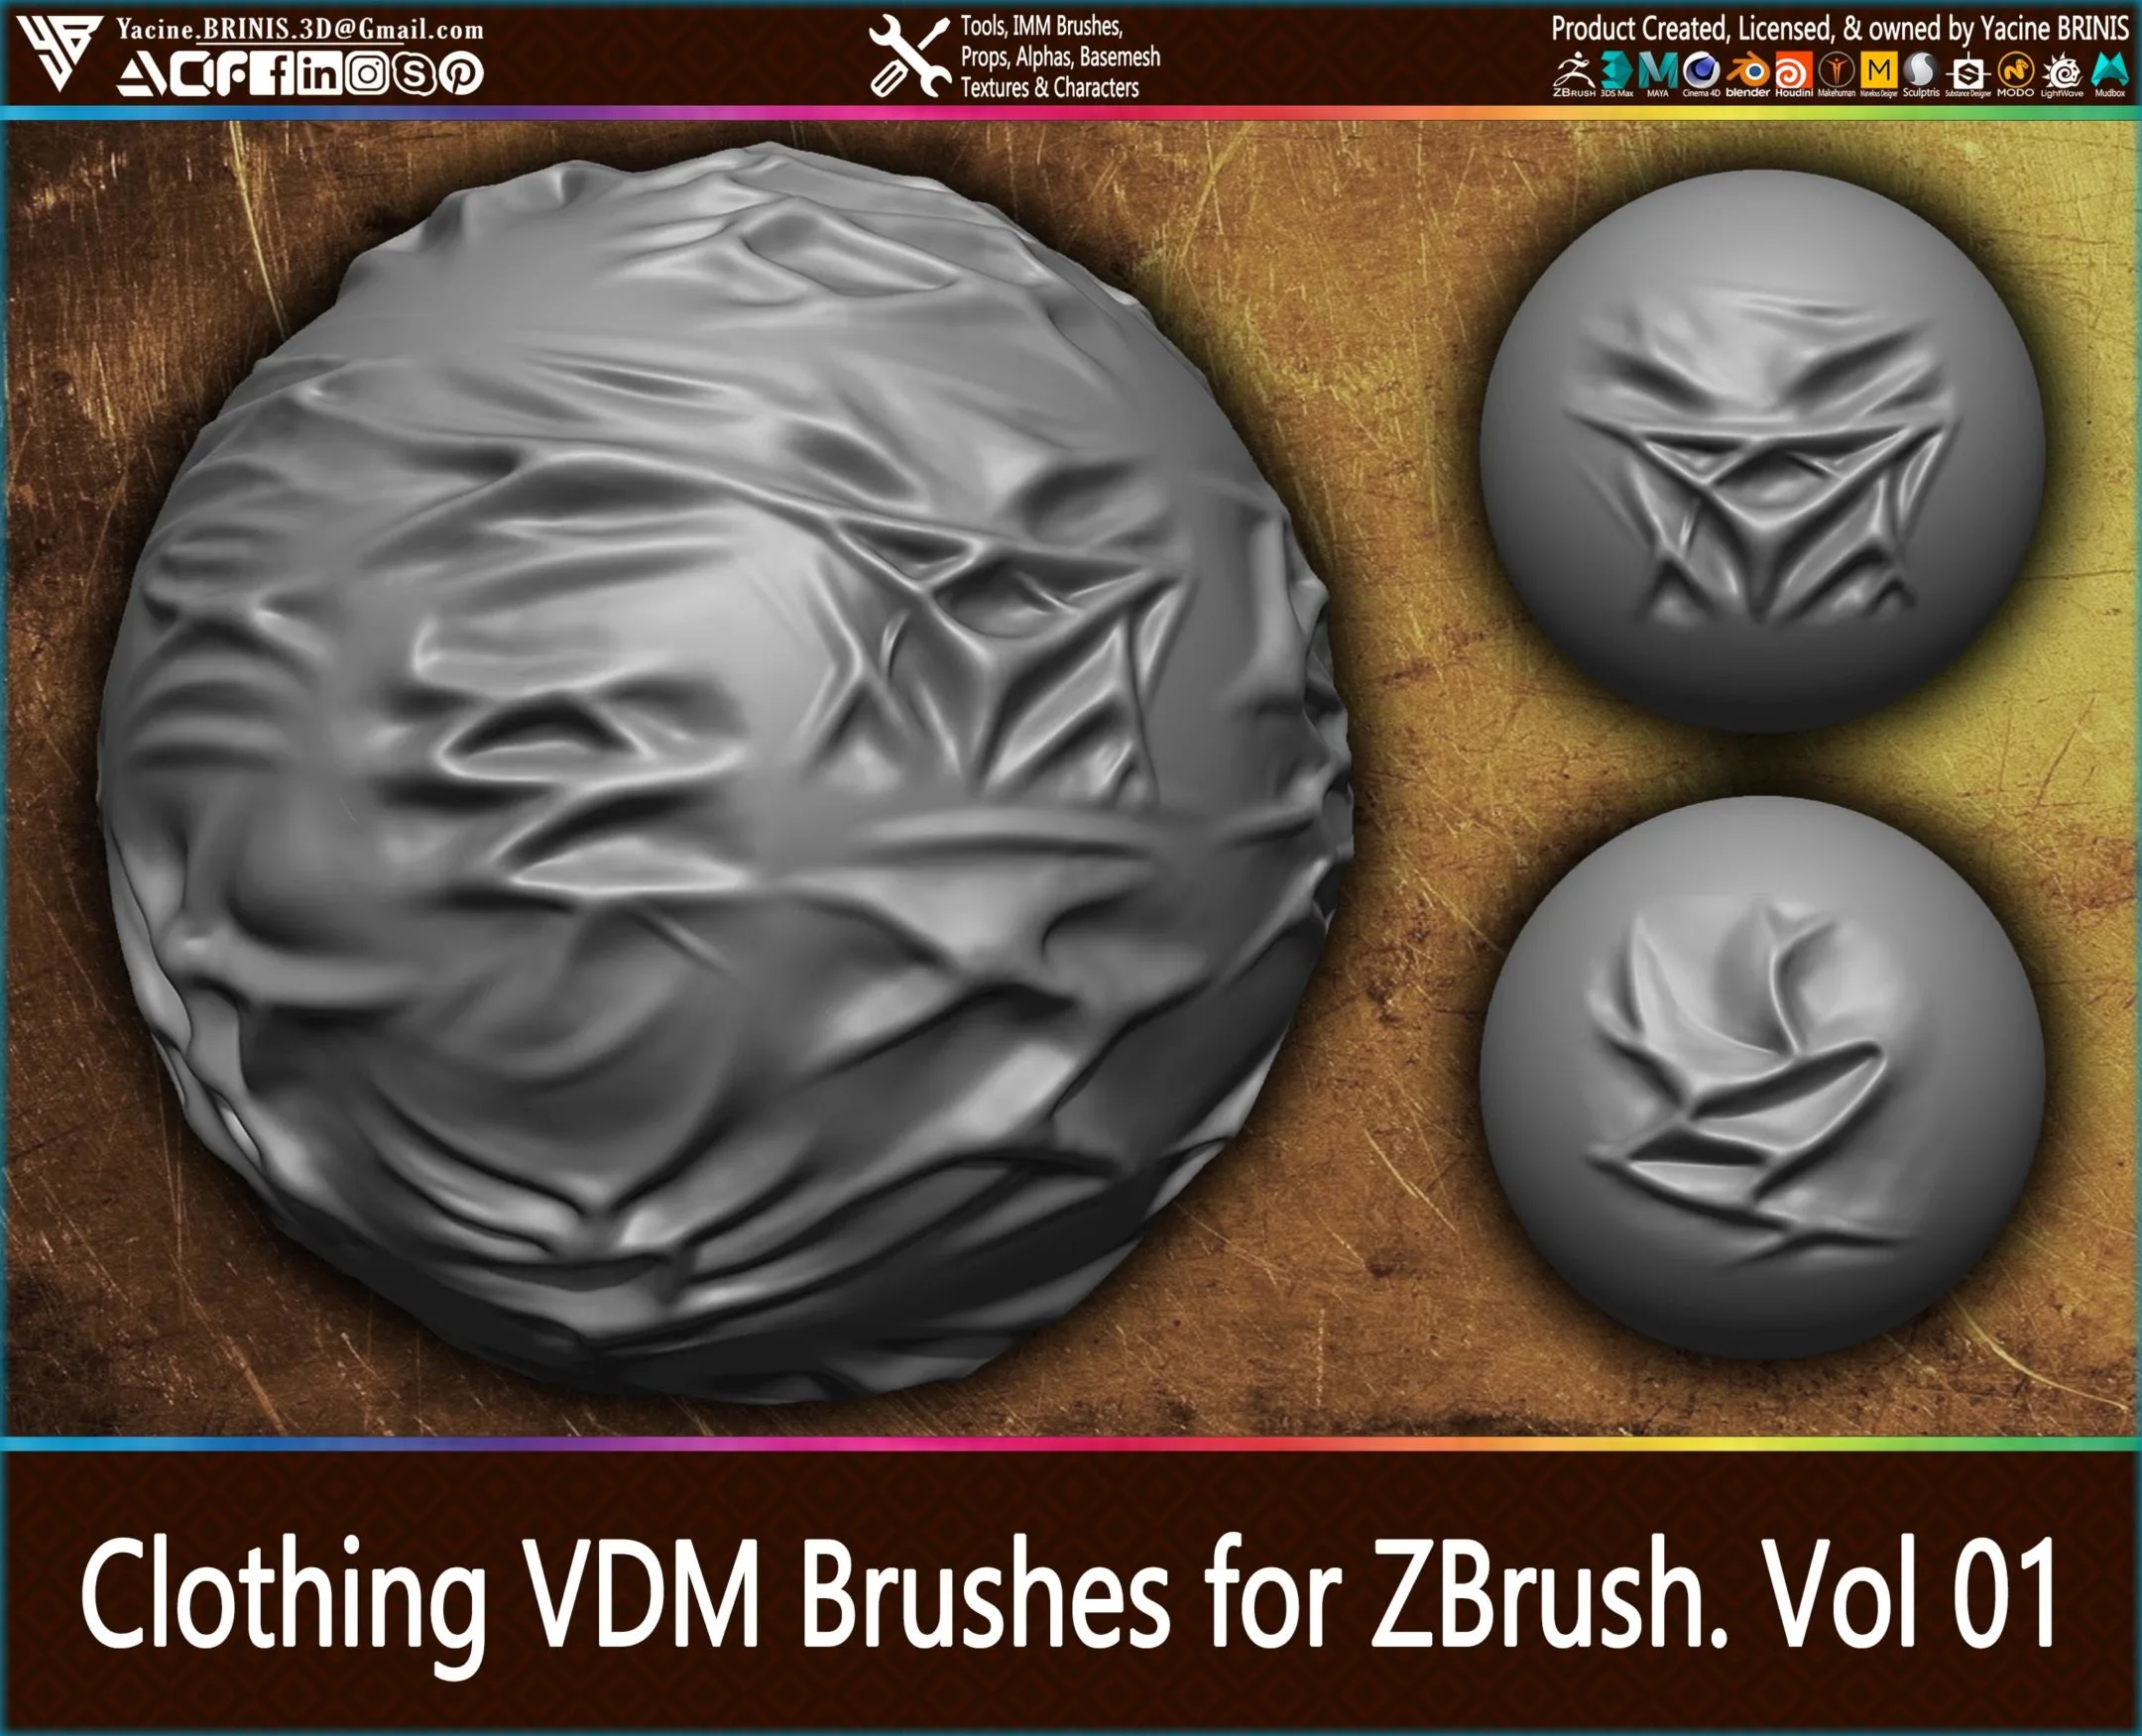 Clothing VDM Brushes for ZBrush. Vol 1 (Creases, Folds, Silks, Wrinkles)